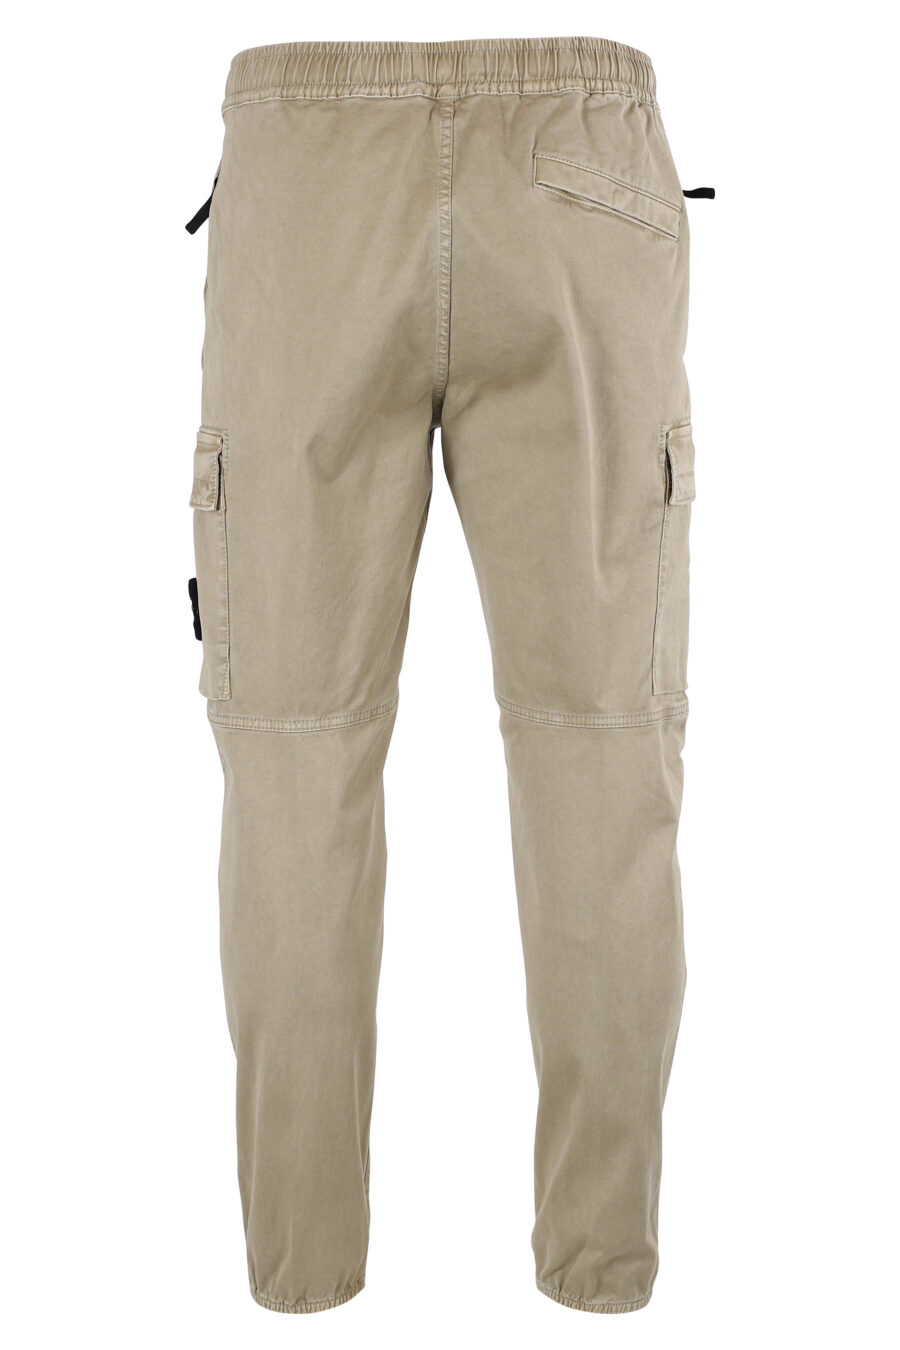 Pantalon cargo beige avec patch latéral - IMG 8327